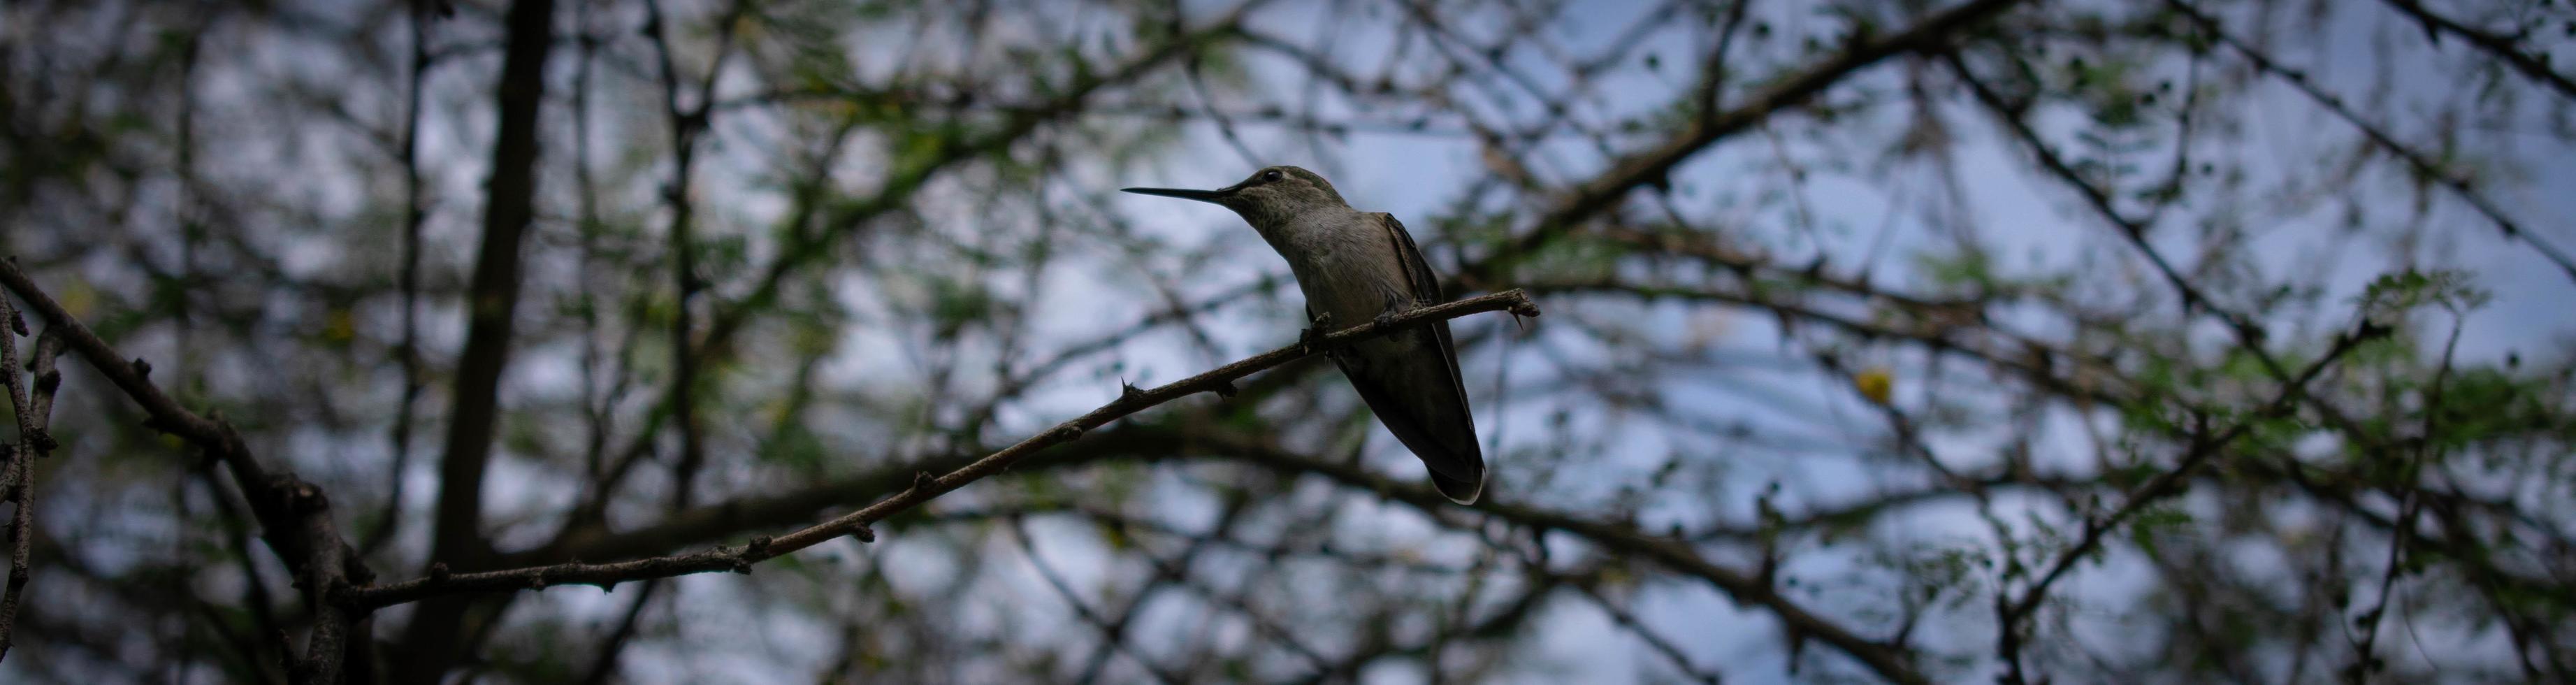 Kolibri auf einem Baum sitzen foto